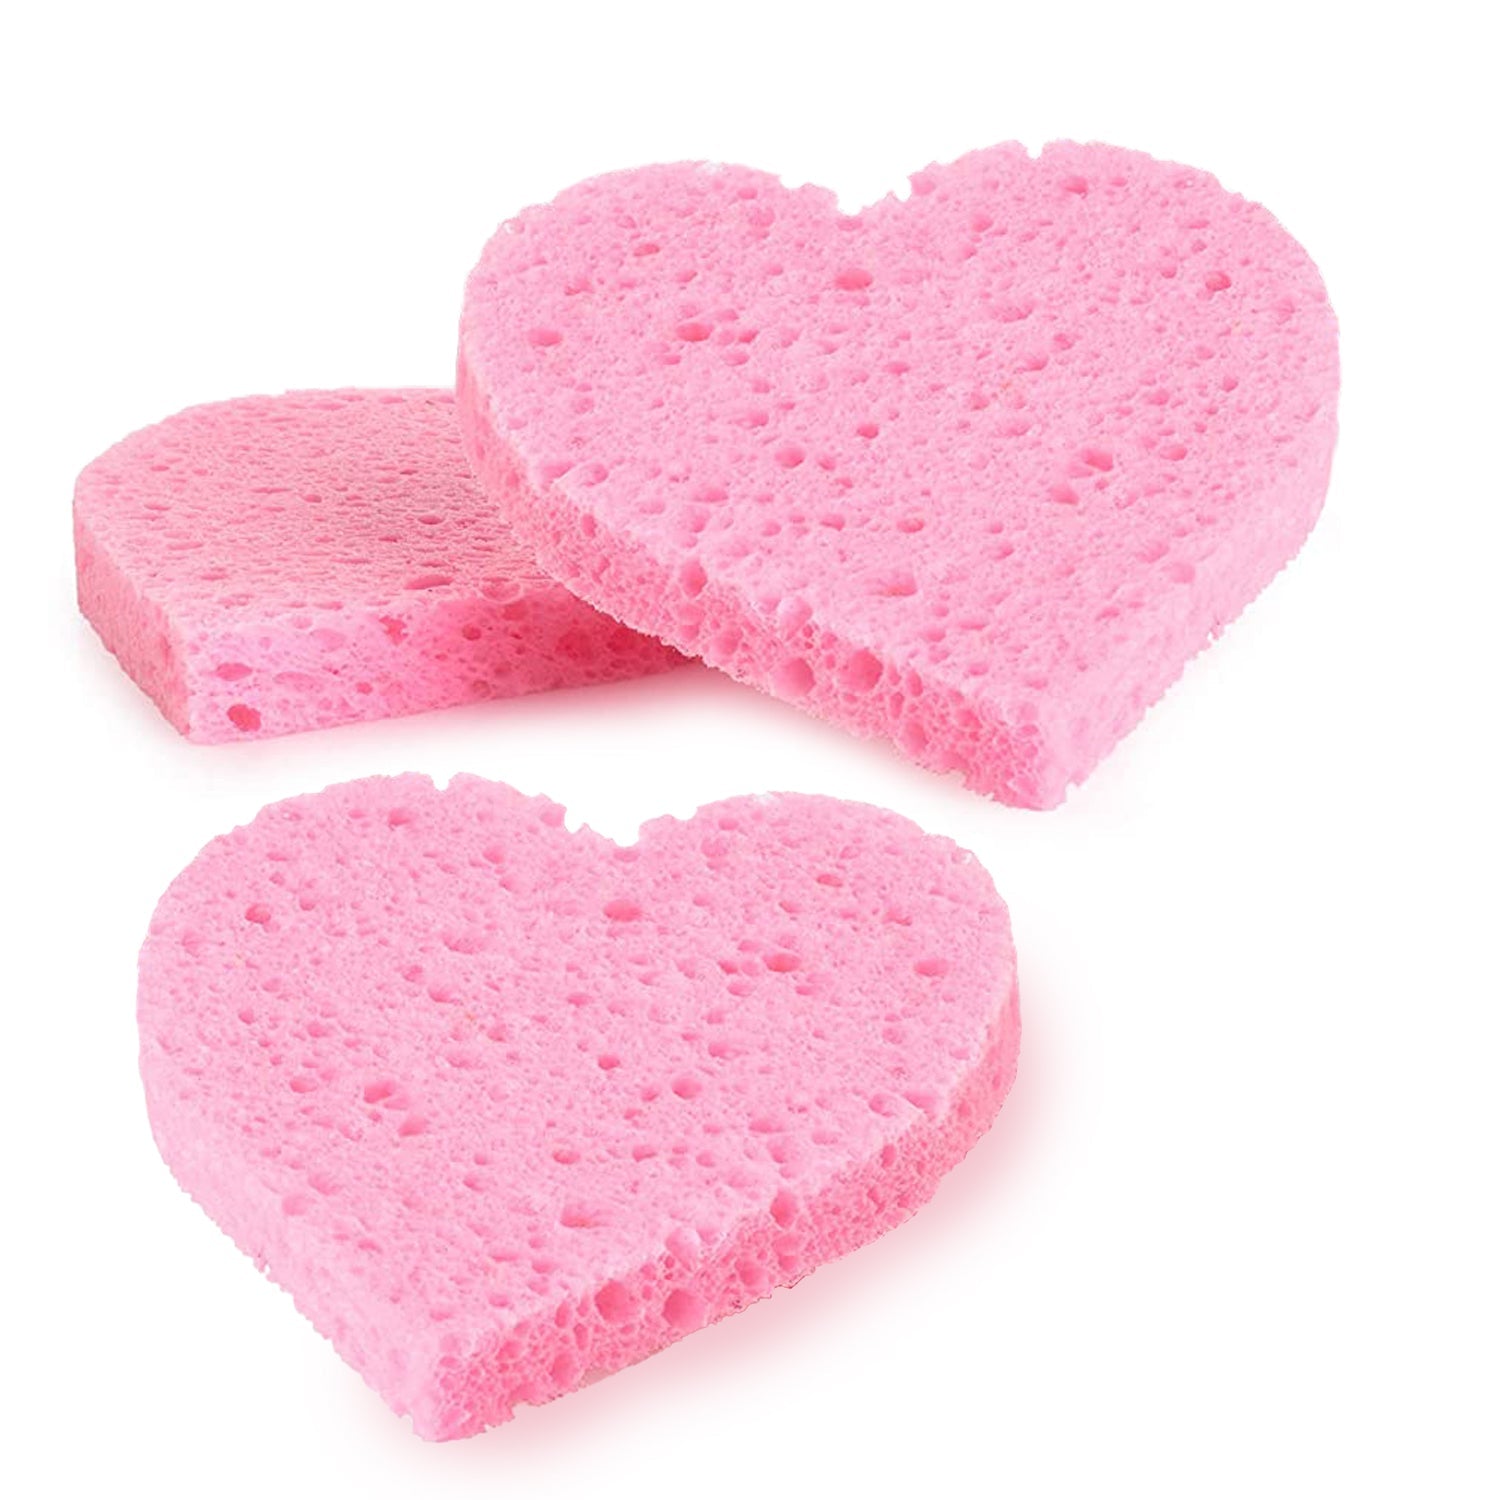 Heart shaped Konjac sponge, Pink